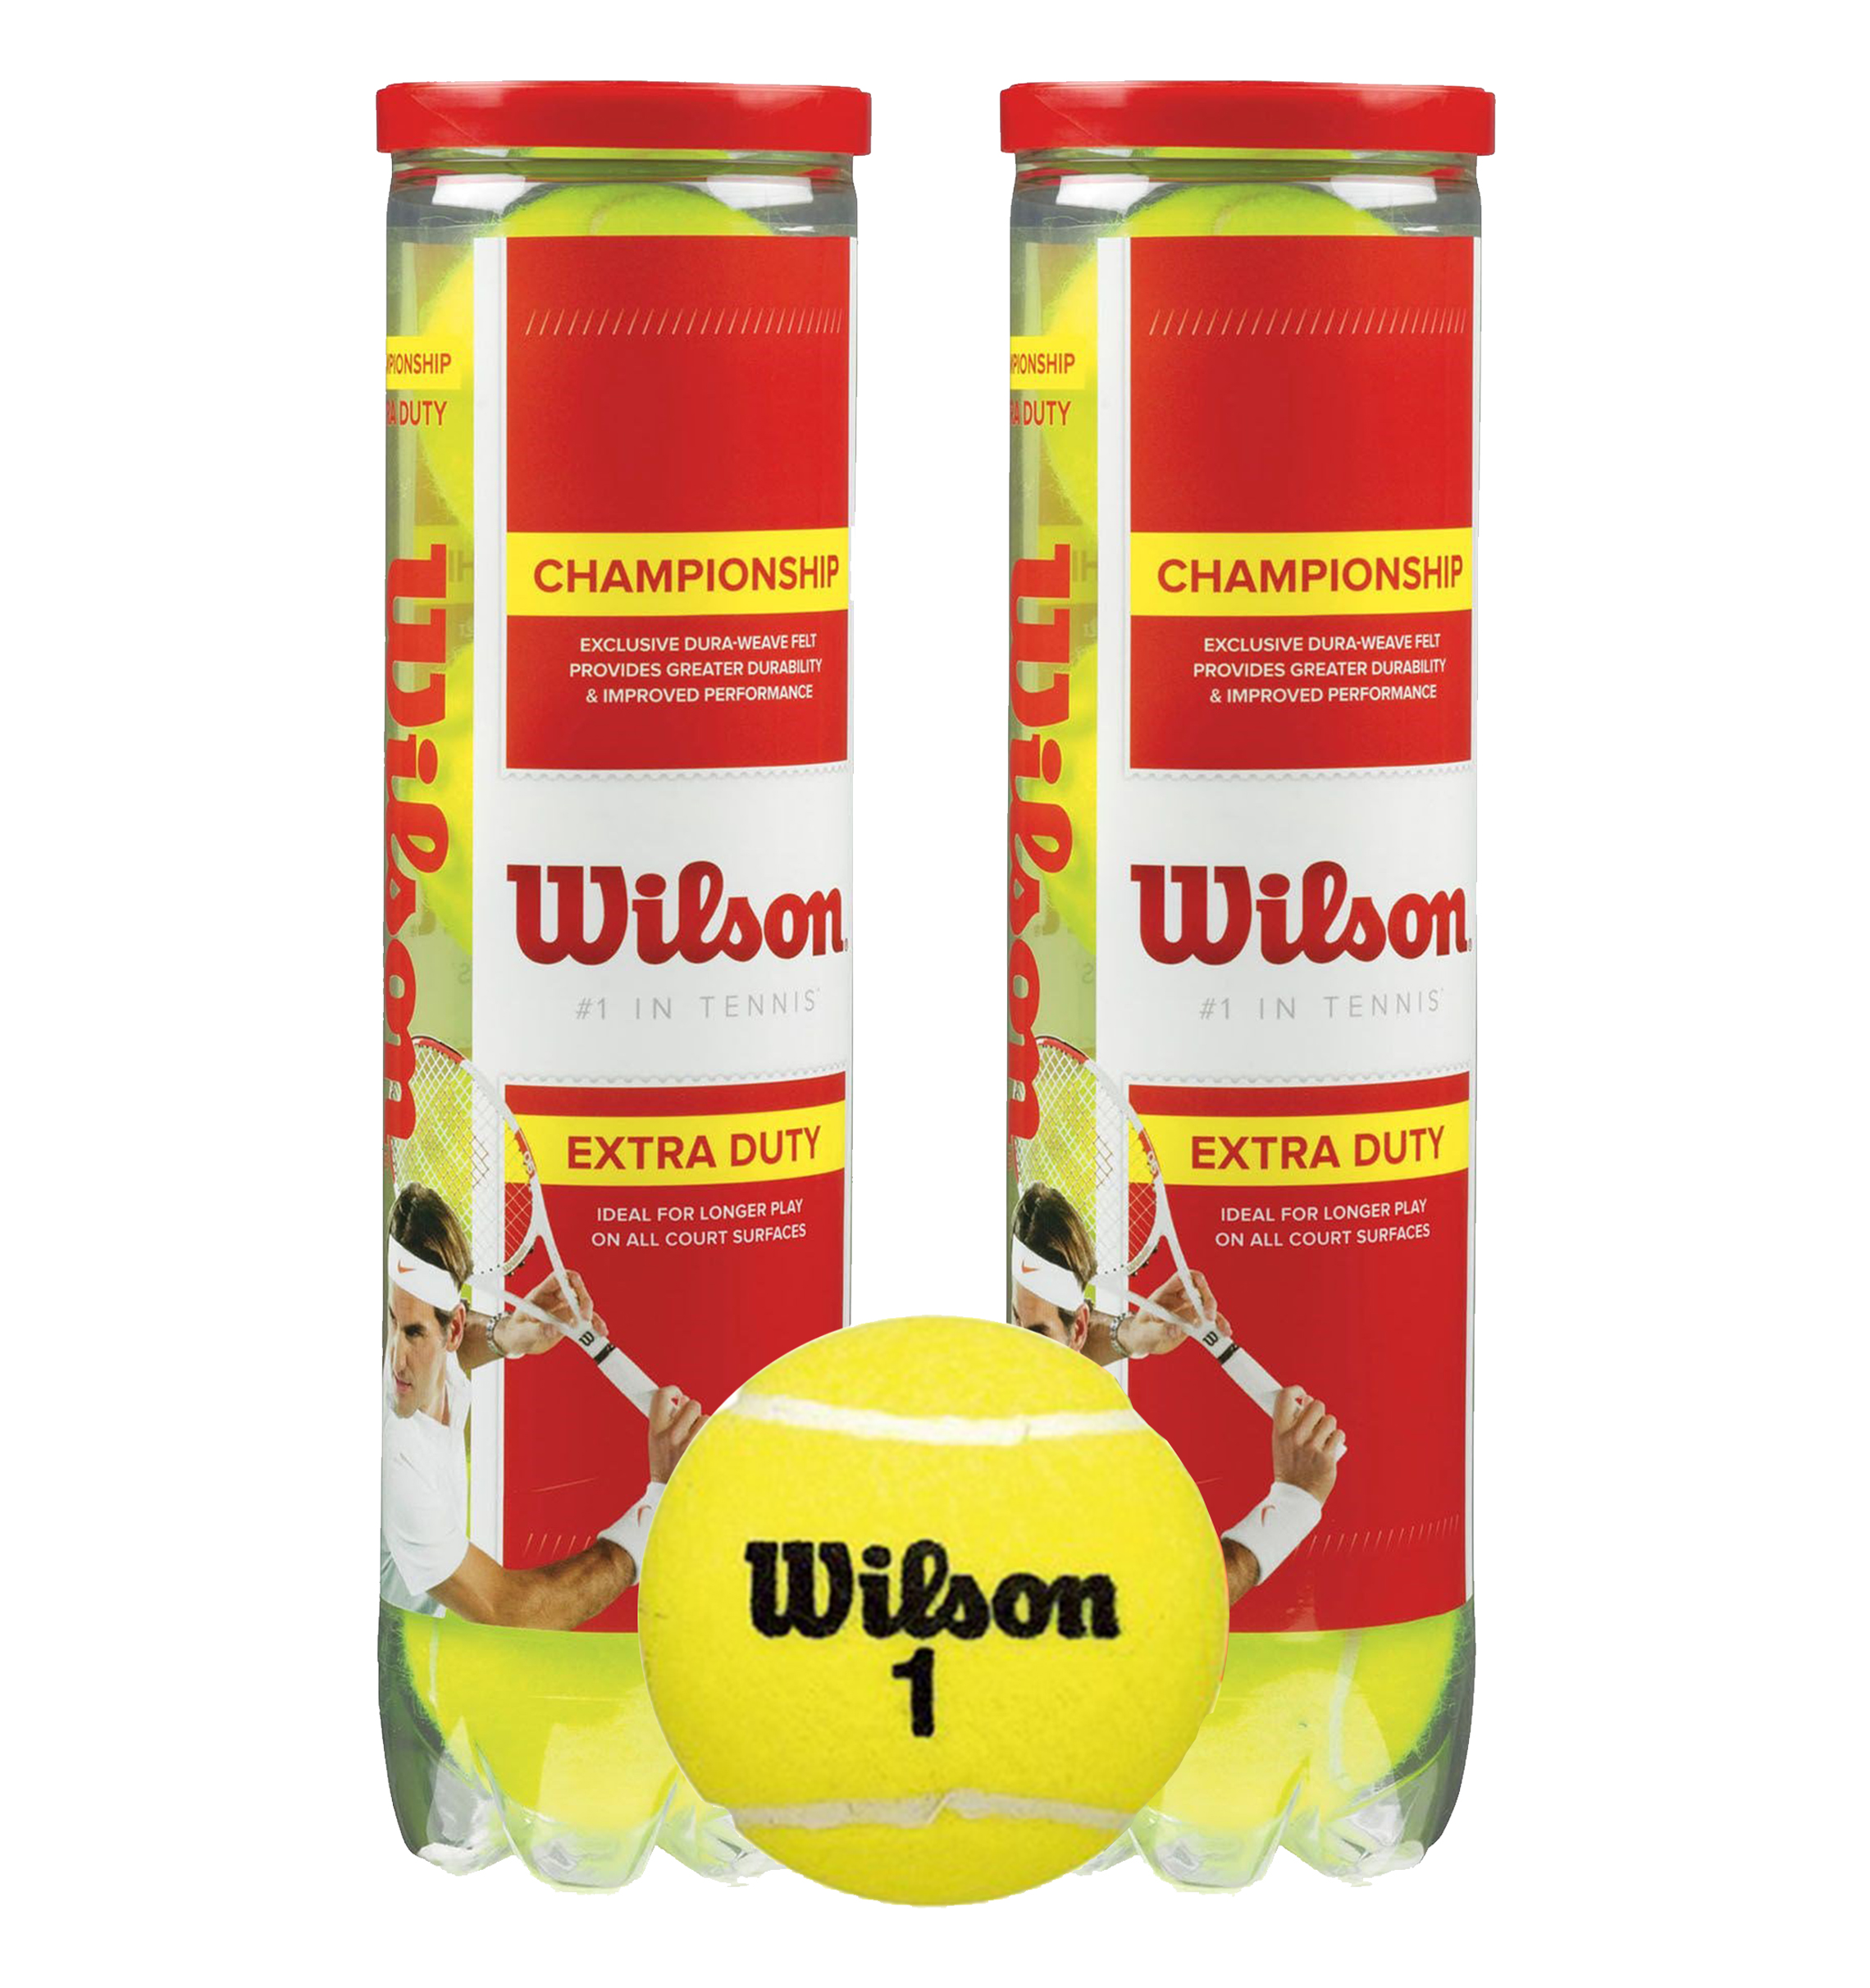 Bóng tennis Wilson Tennis Wilson WRT110000 Championship đỏ 4 trái